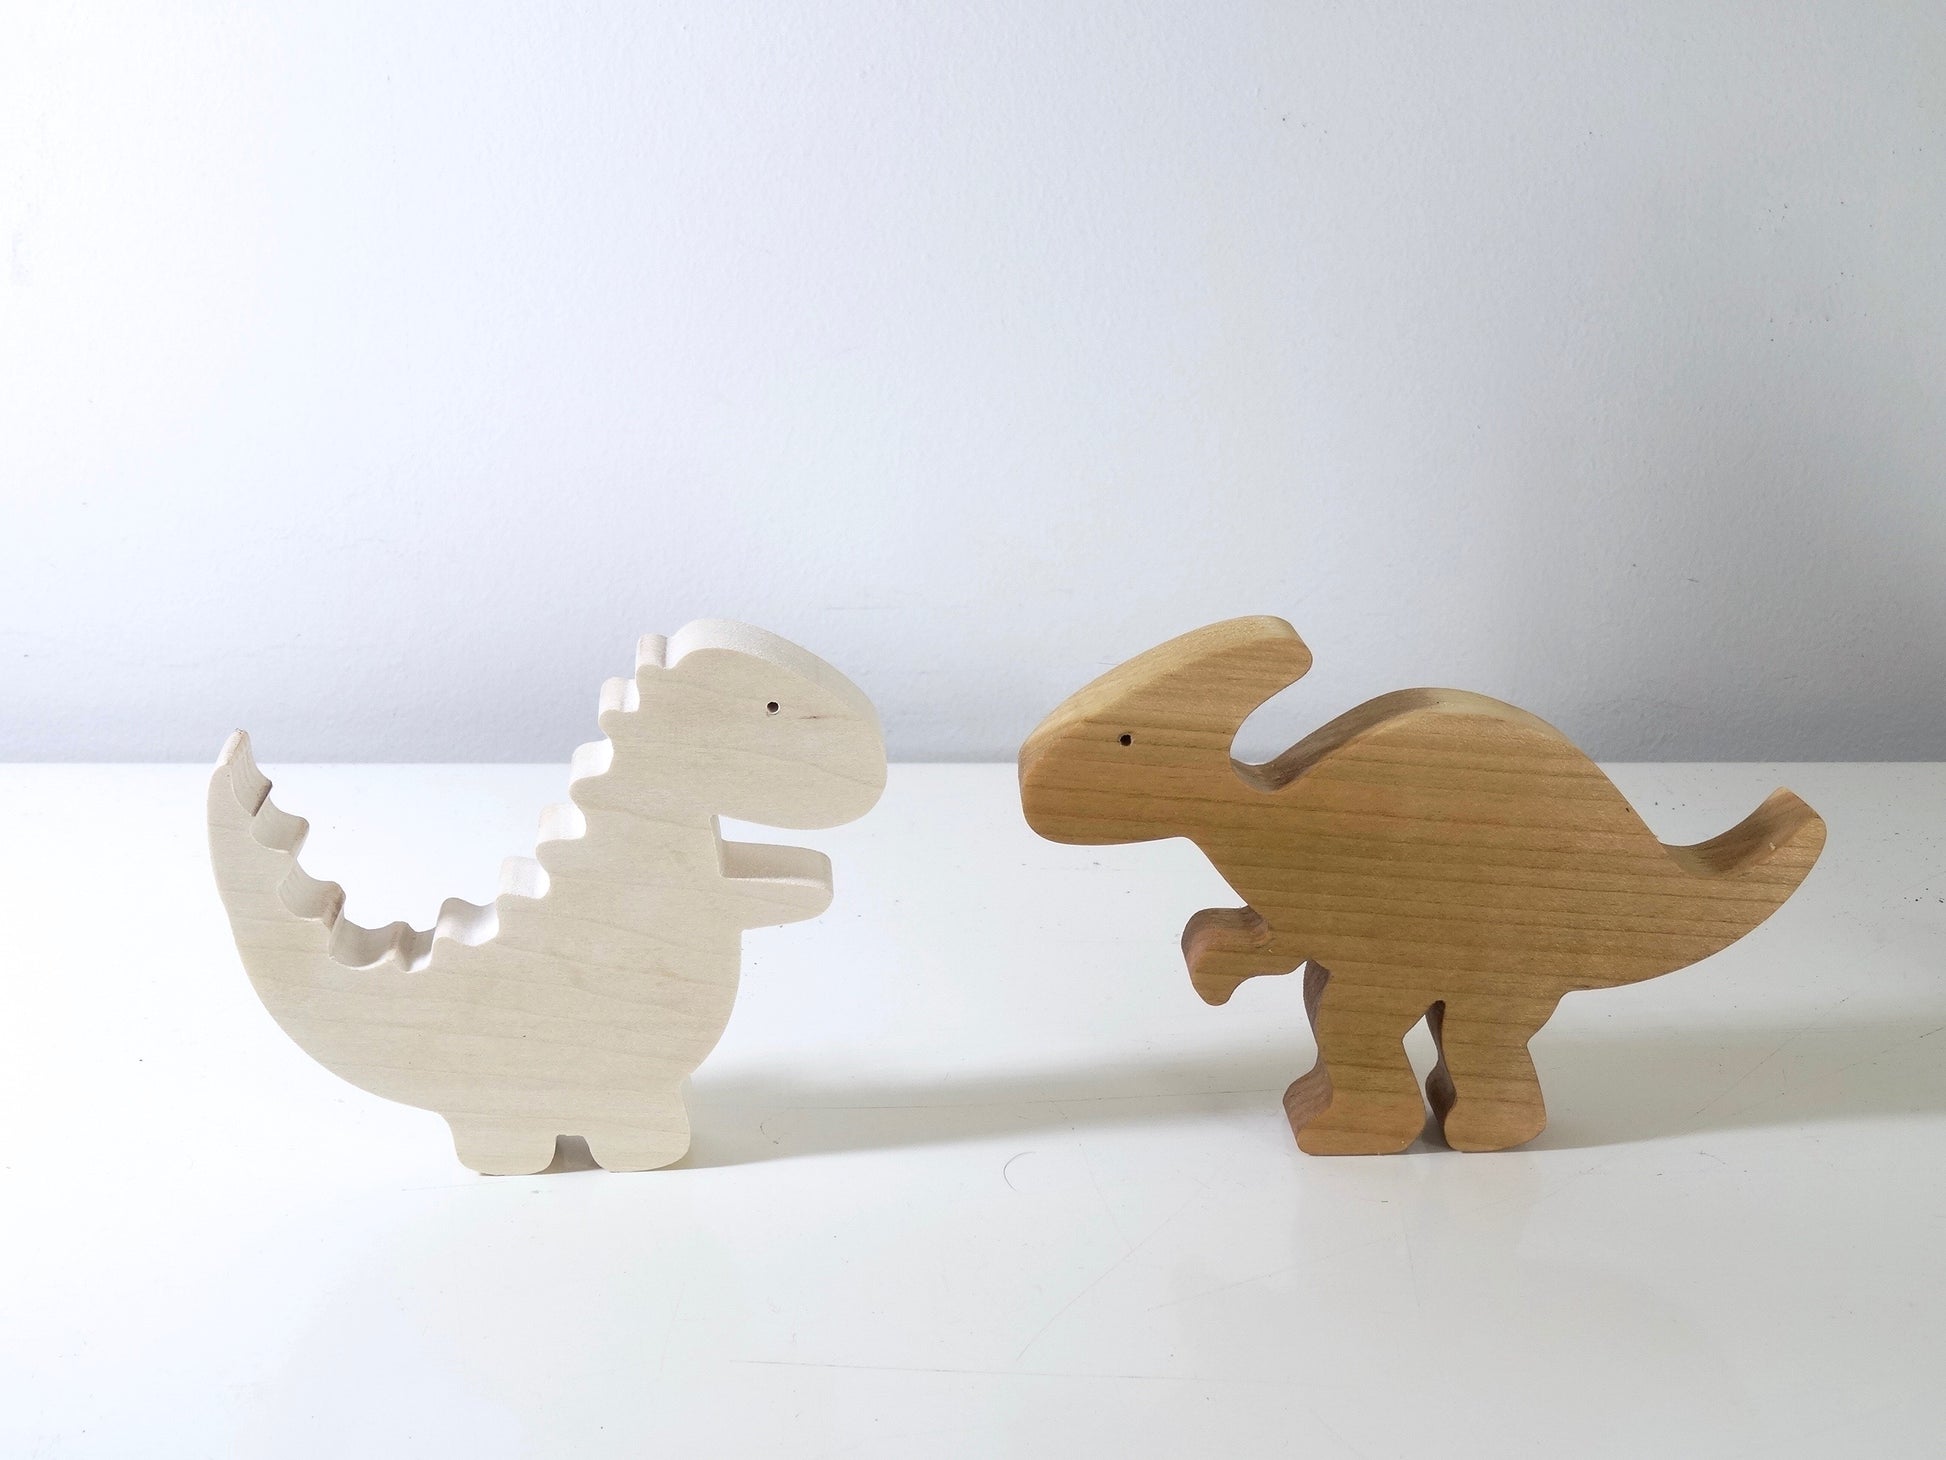 Jouets : Deux dinosaures en bois